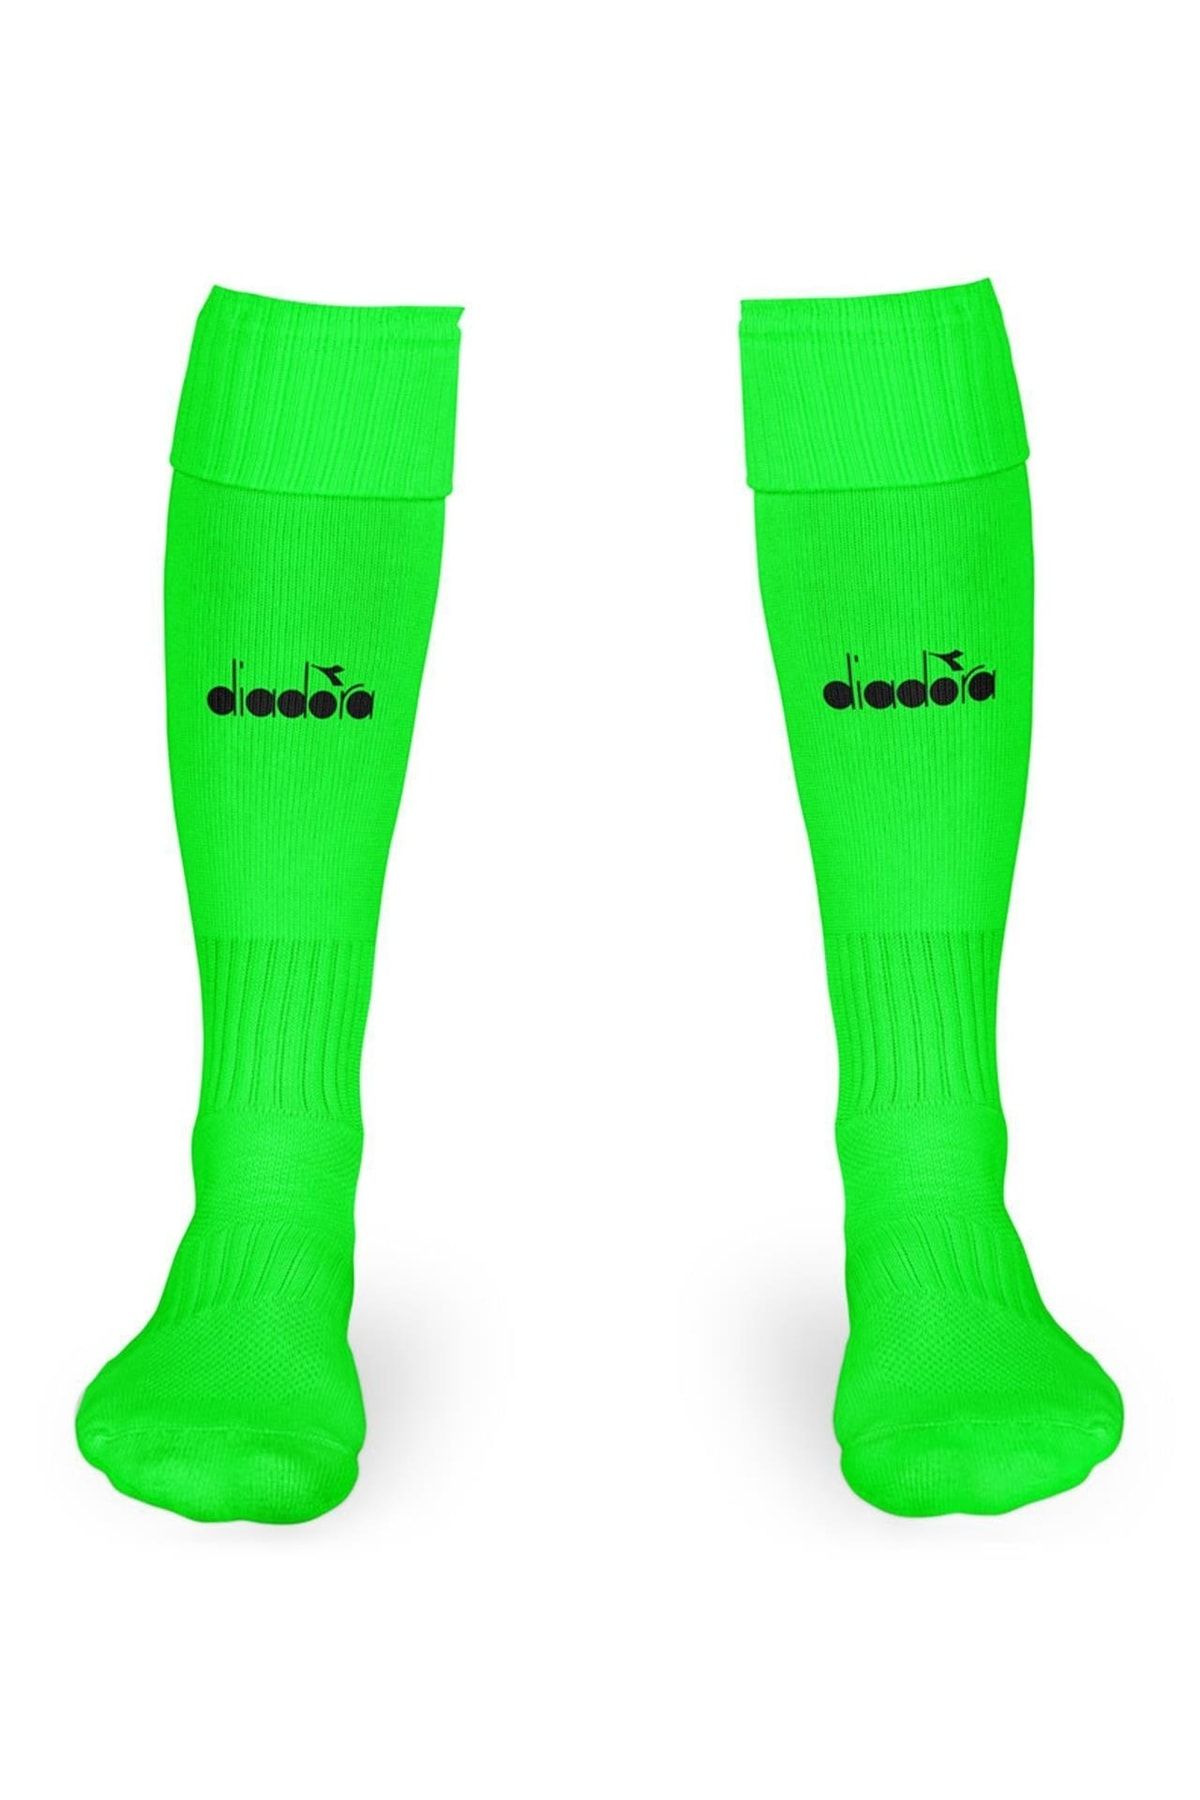 Diadora Orikon Futbol Çorabı F.yeşil